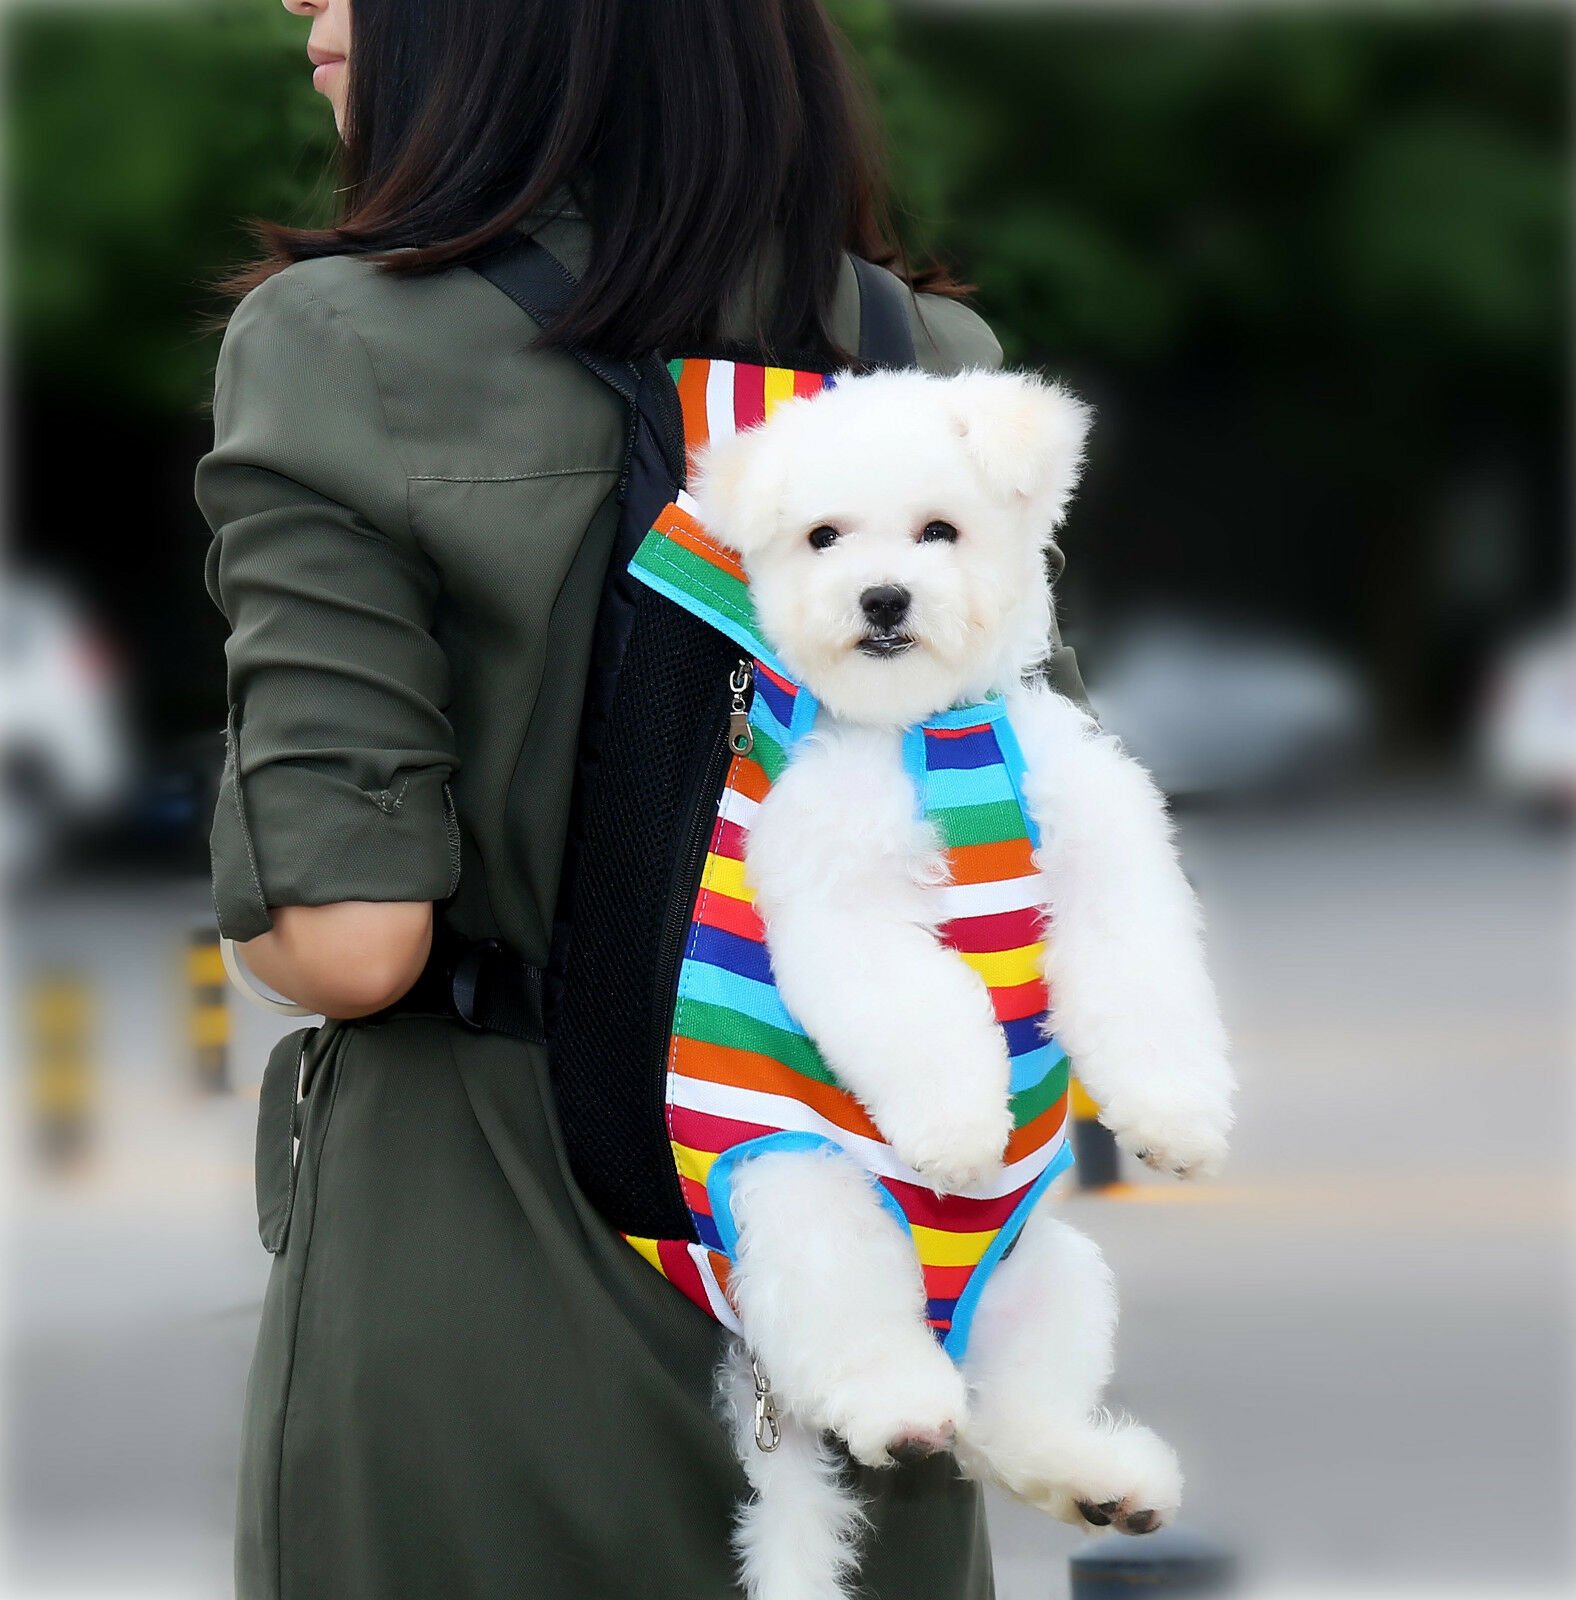 Image 21 - Pet Carrier Backpack Adjustable Pet Front Cat Dog Carrier Travel Bag Legs Out